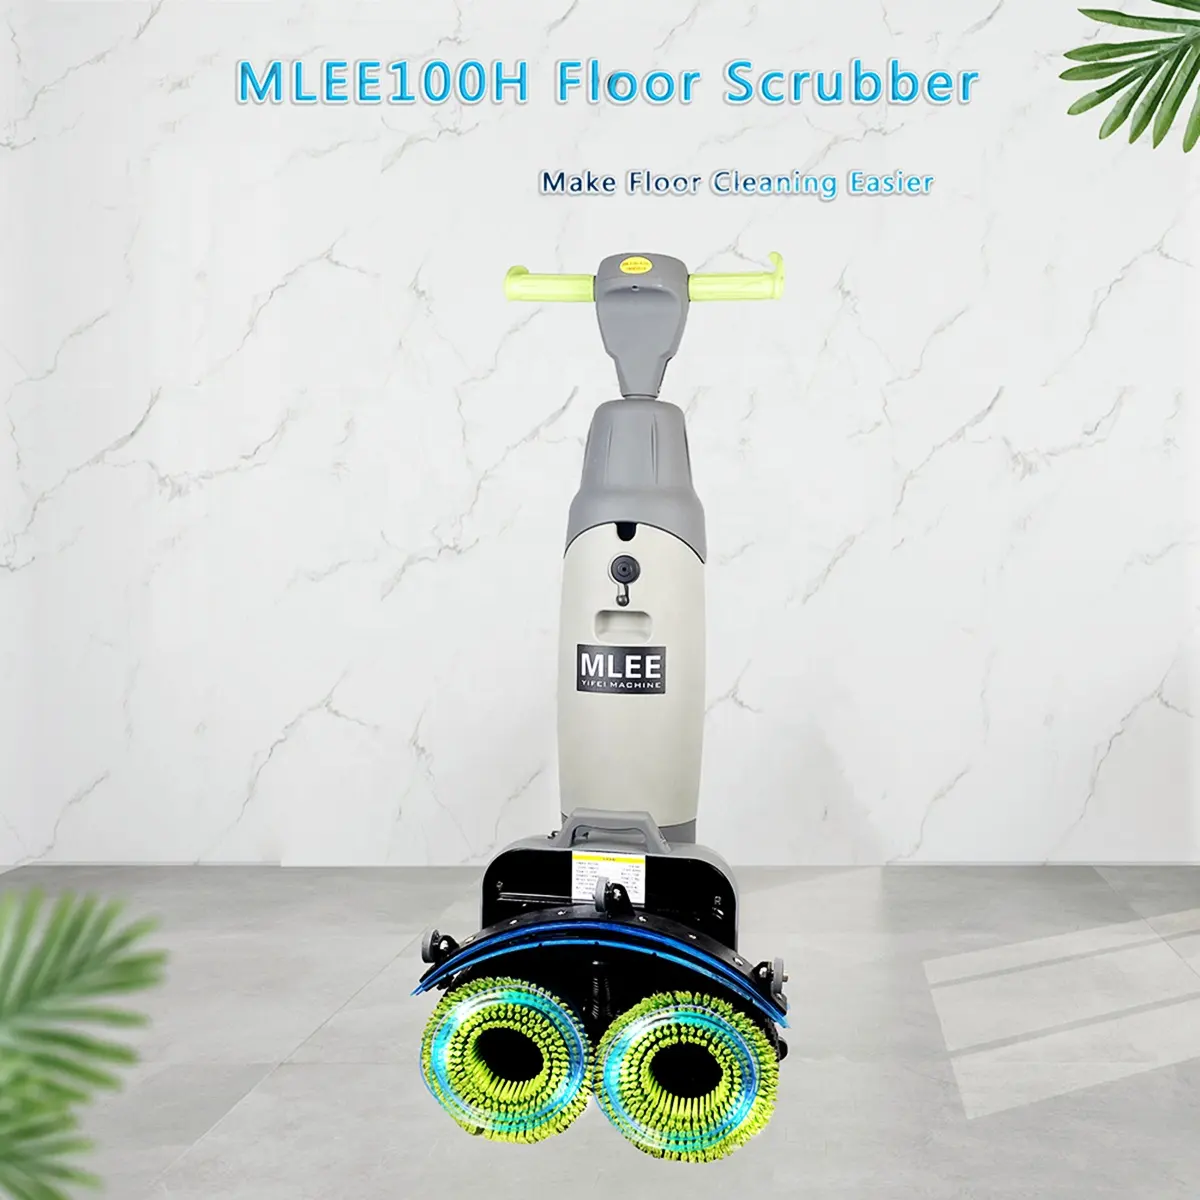 Mini depurador de piso MLEE100H con piso de máquina de limpieza de cepillo doble alimentado por batería de litio